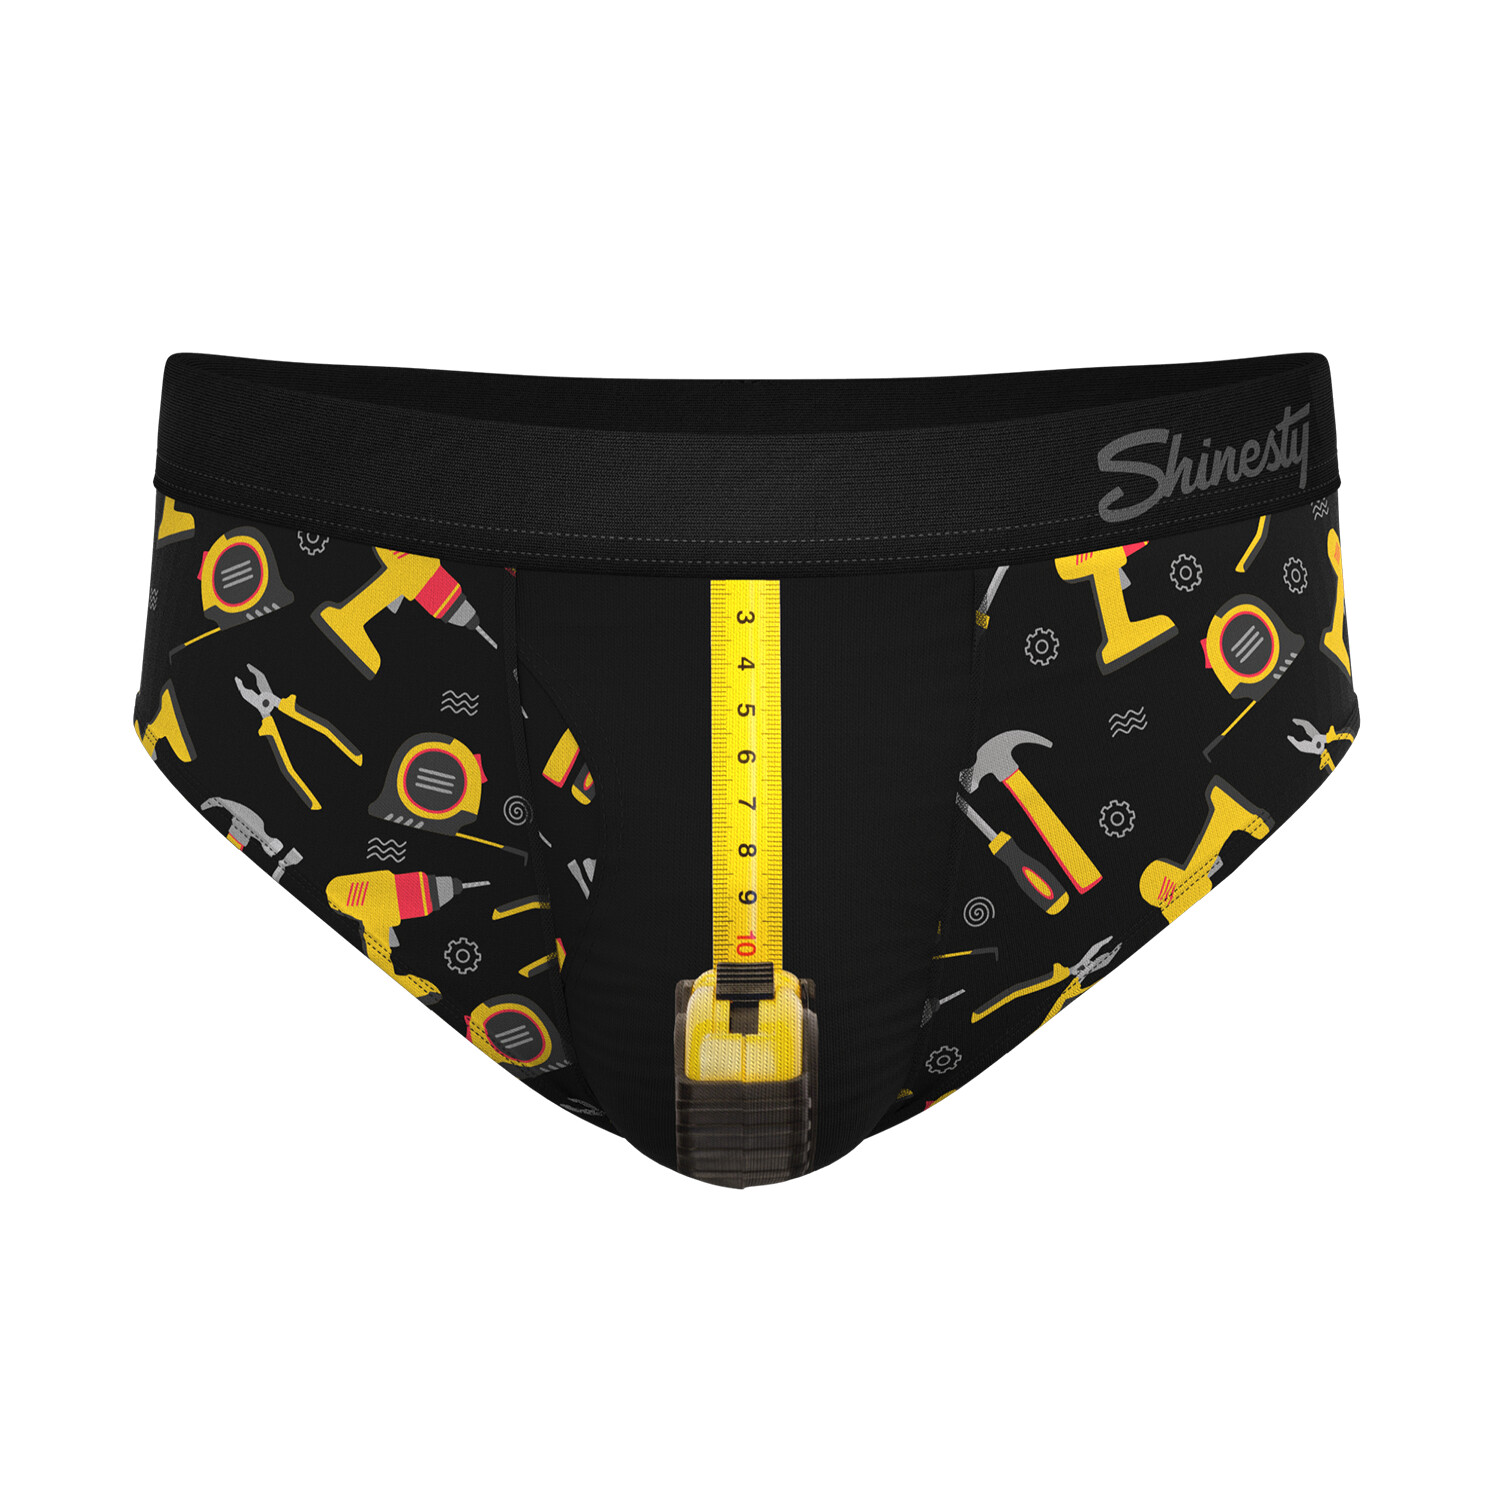  Shinesty Hammock Support Pouch Underwear For Men